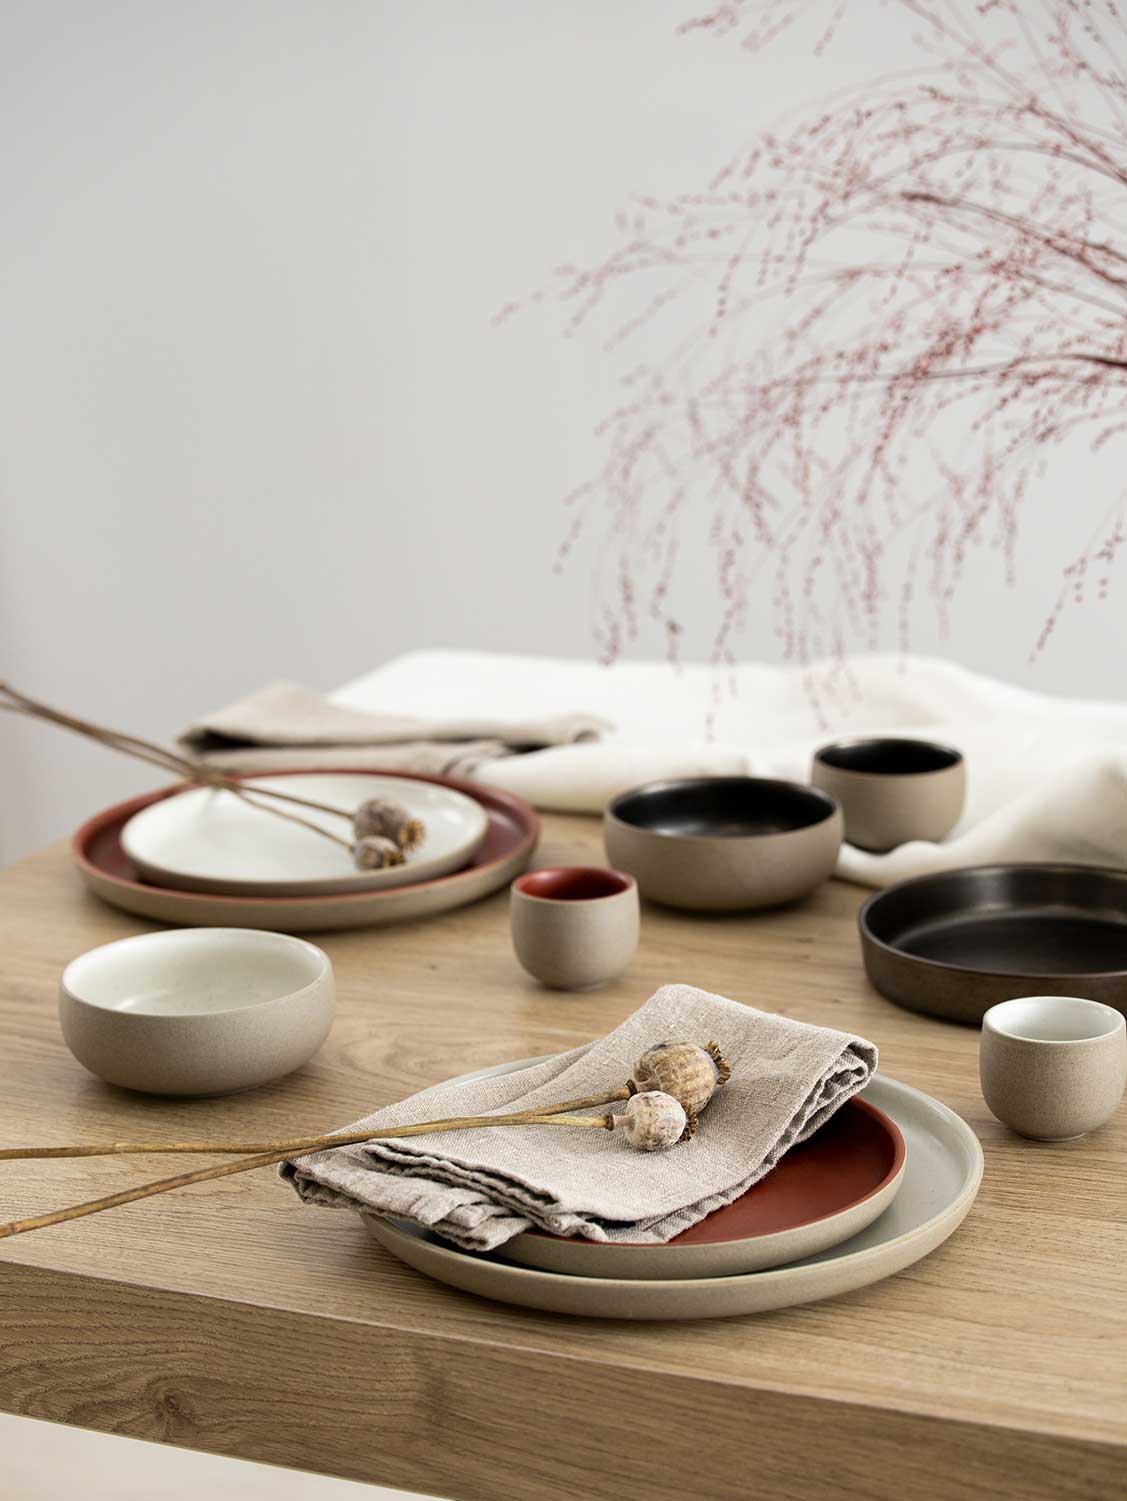 Die Serie Joyn Stoneware von Rosenthal mit seinen kleinen Teilen ist ein Paradebeispiel für den großen Tisch.